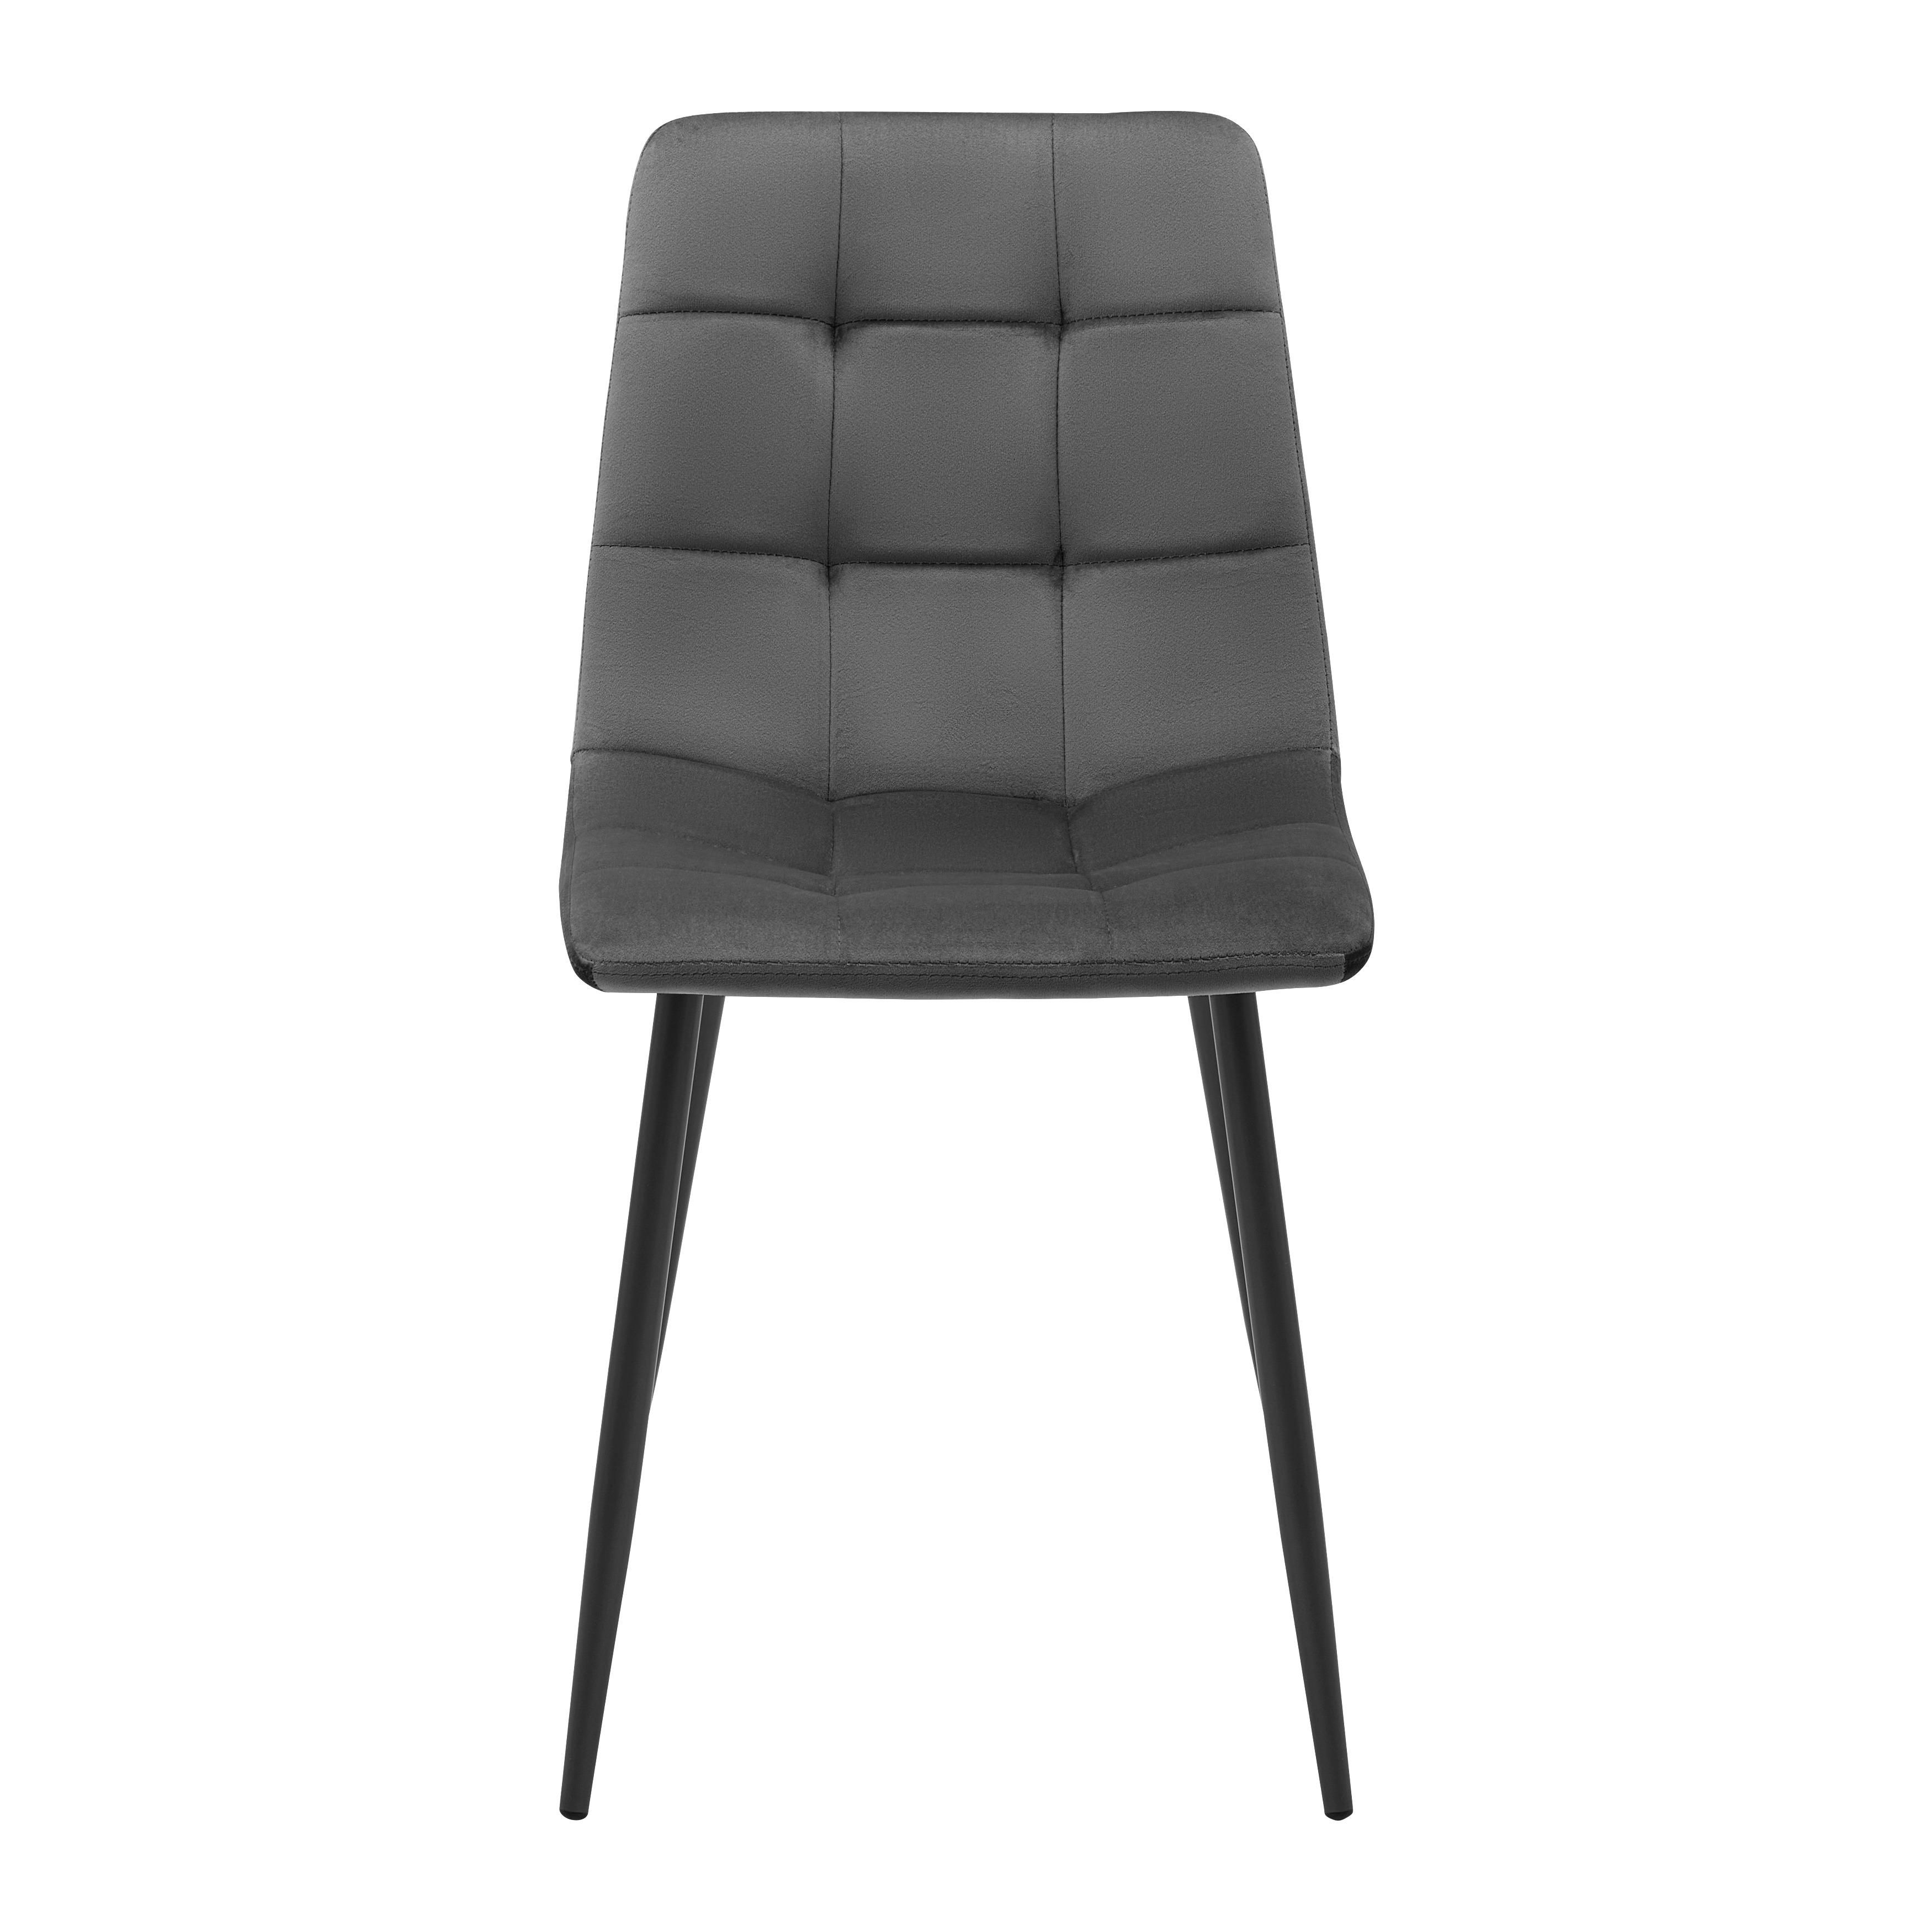 Jídelní Židle Ria Hnědá - šedá/černá, Moderní, kov/textil (43,5/87/54cm) - P & B